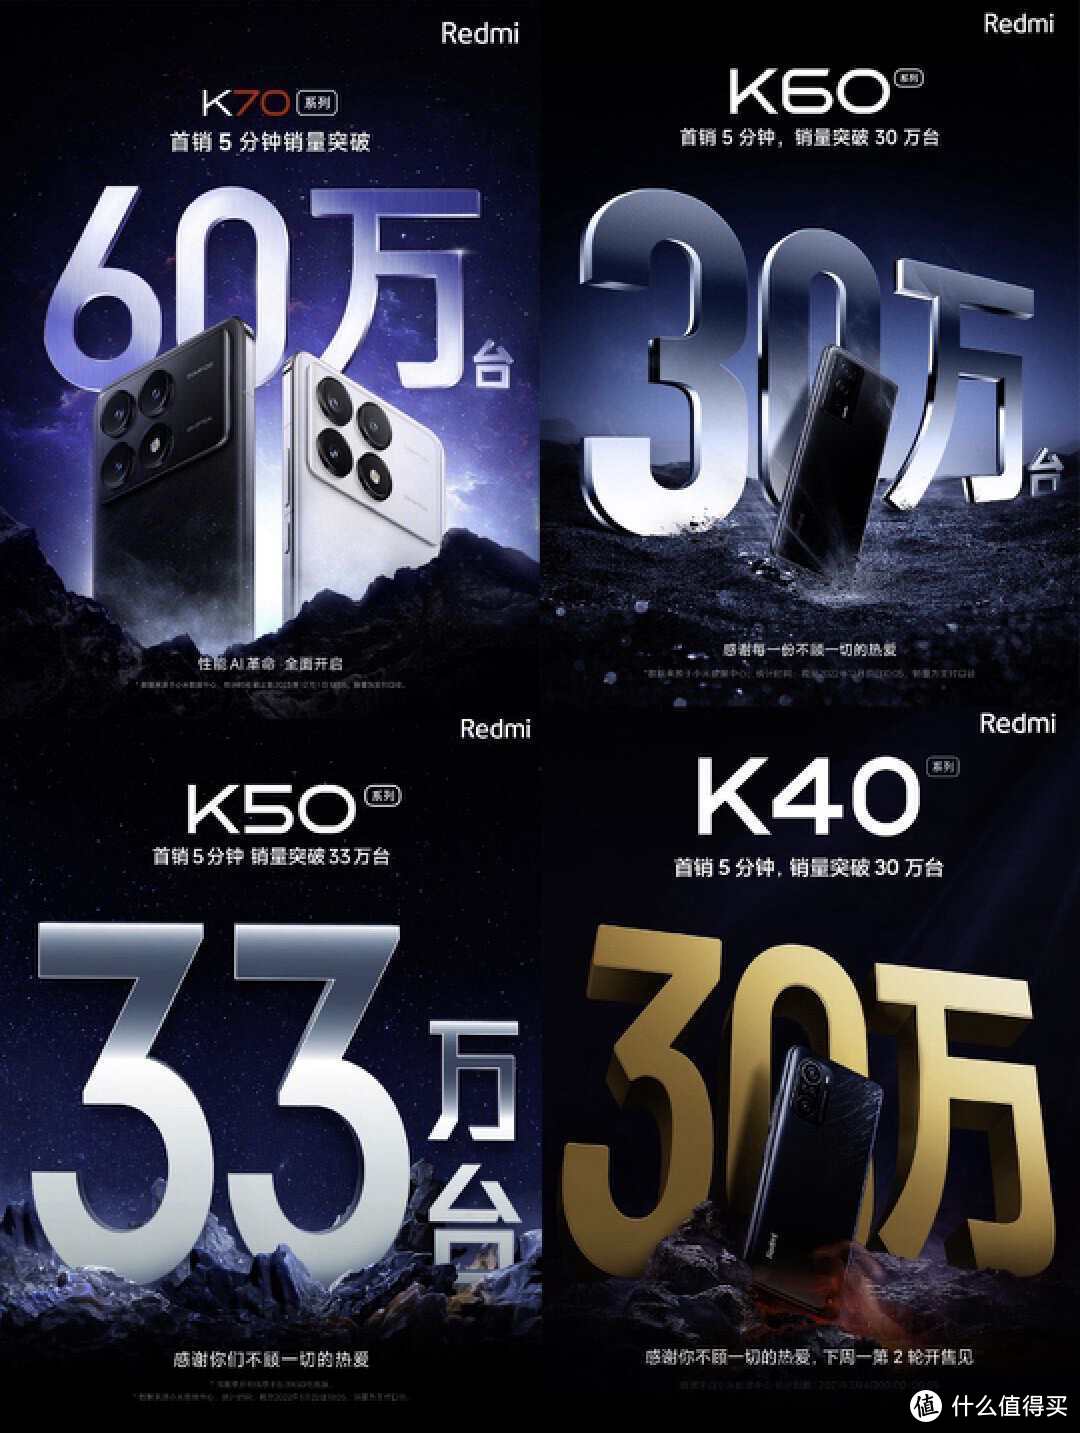 争议可以停止了！5分钟销量破60万台，Redmi K70系列首销亮“剑”